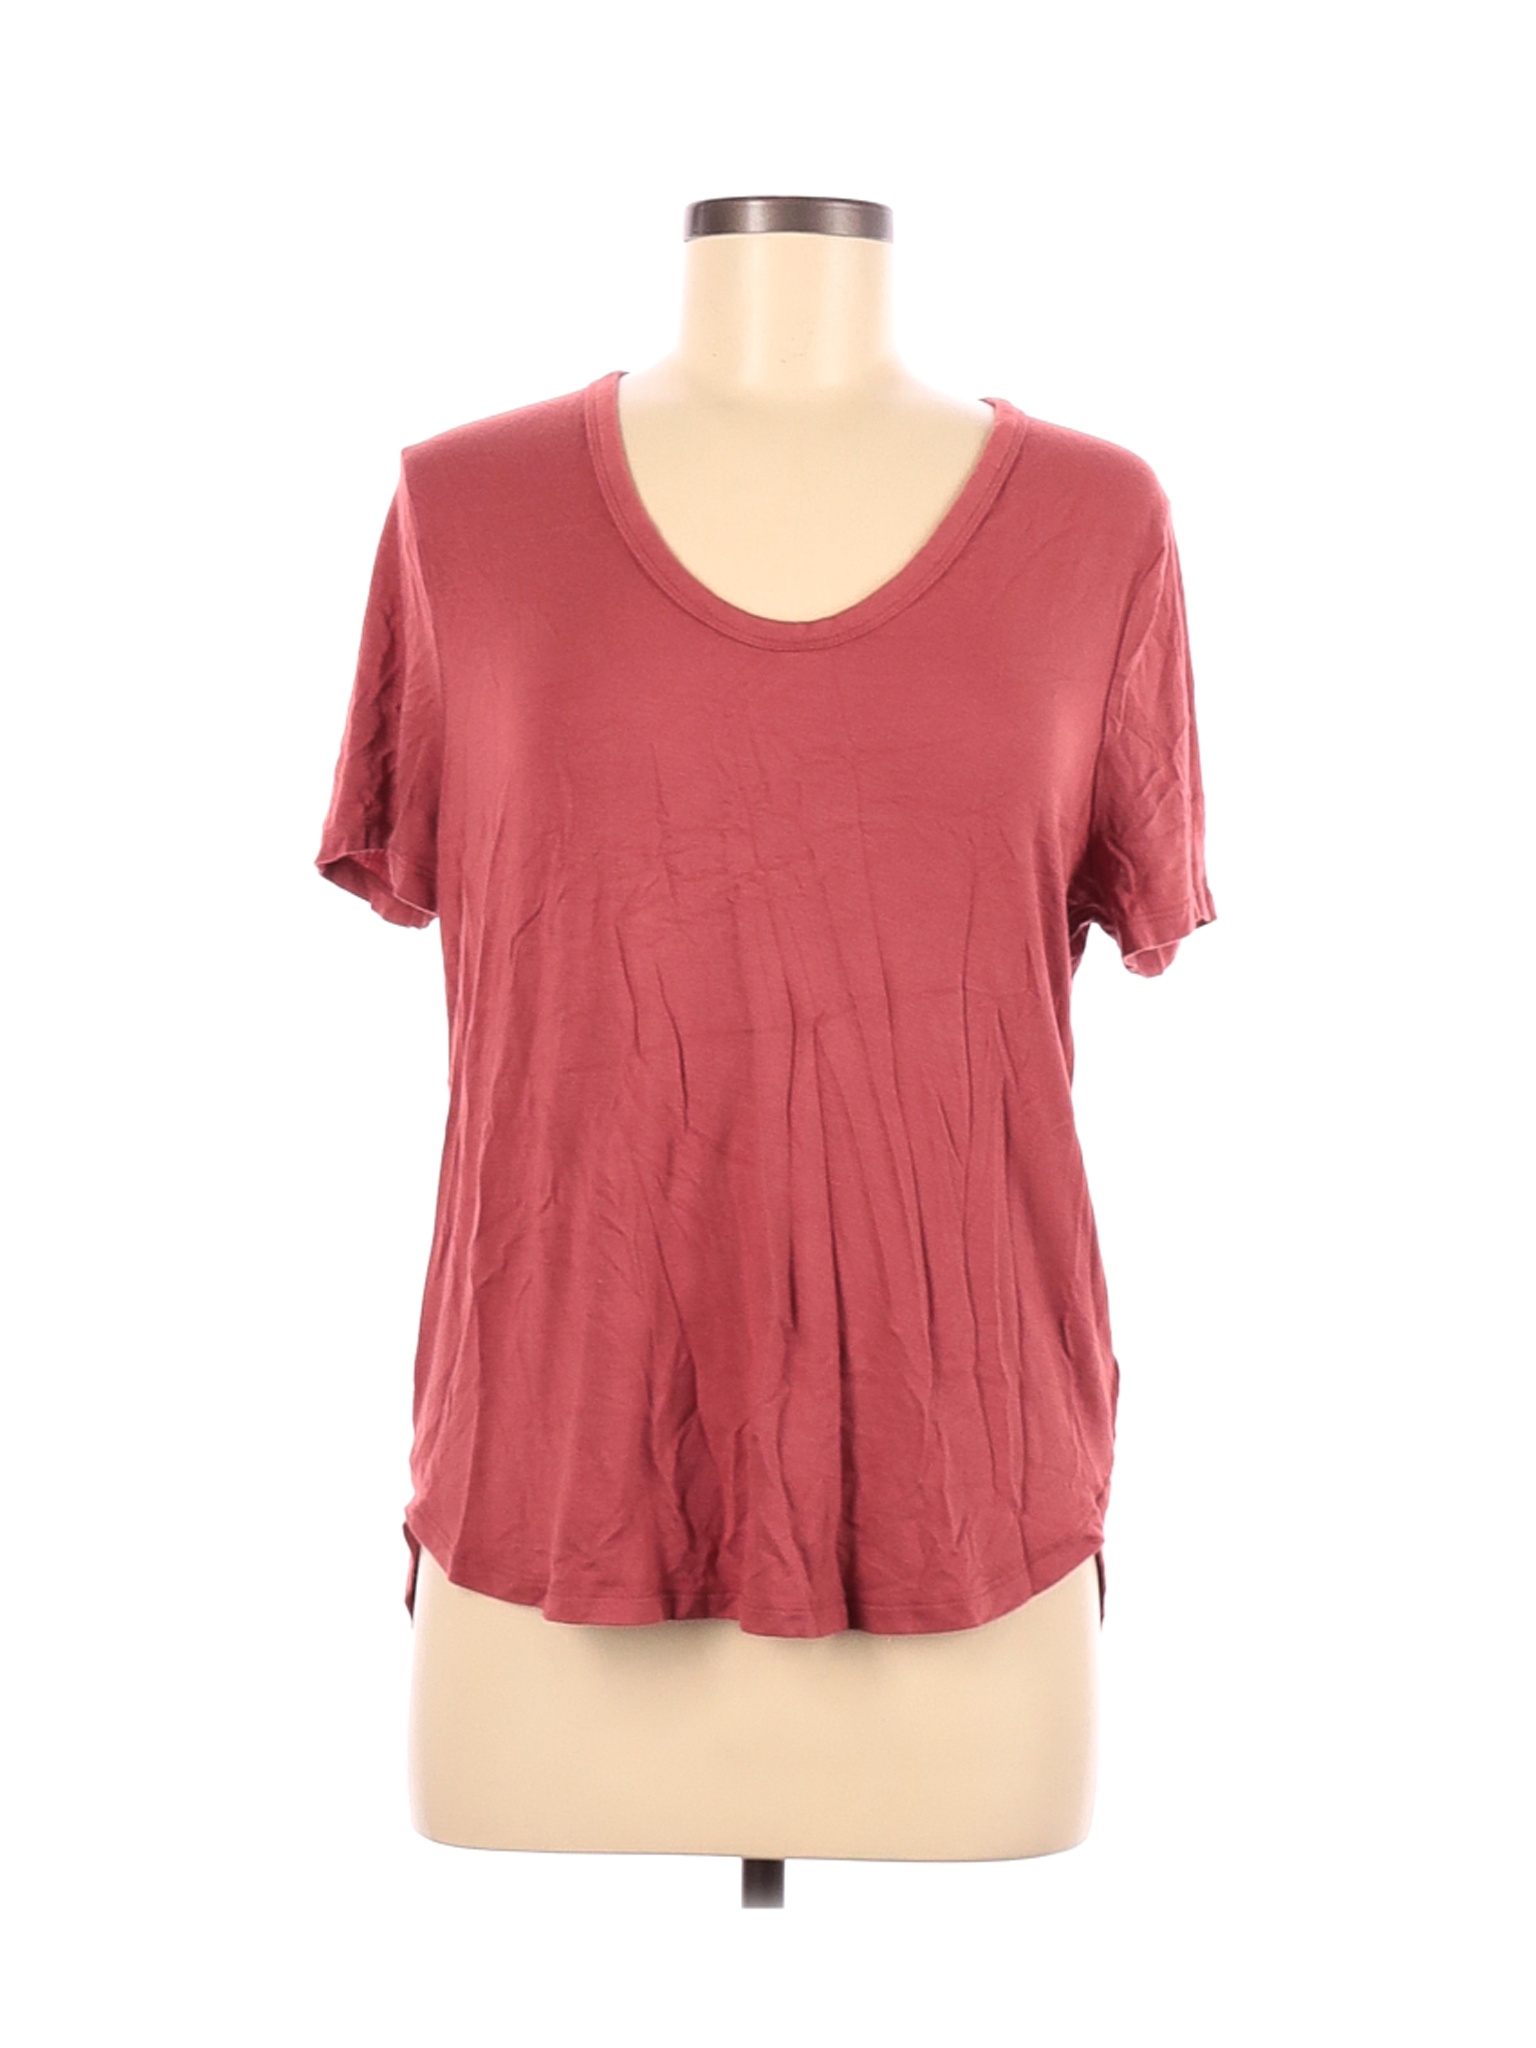 A New Day Women Red Short Sleeve T-Shirt M | eBay